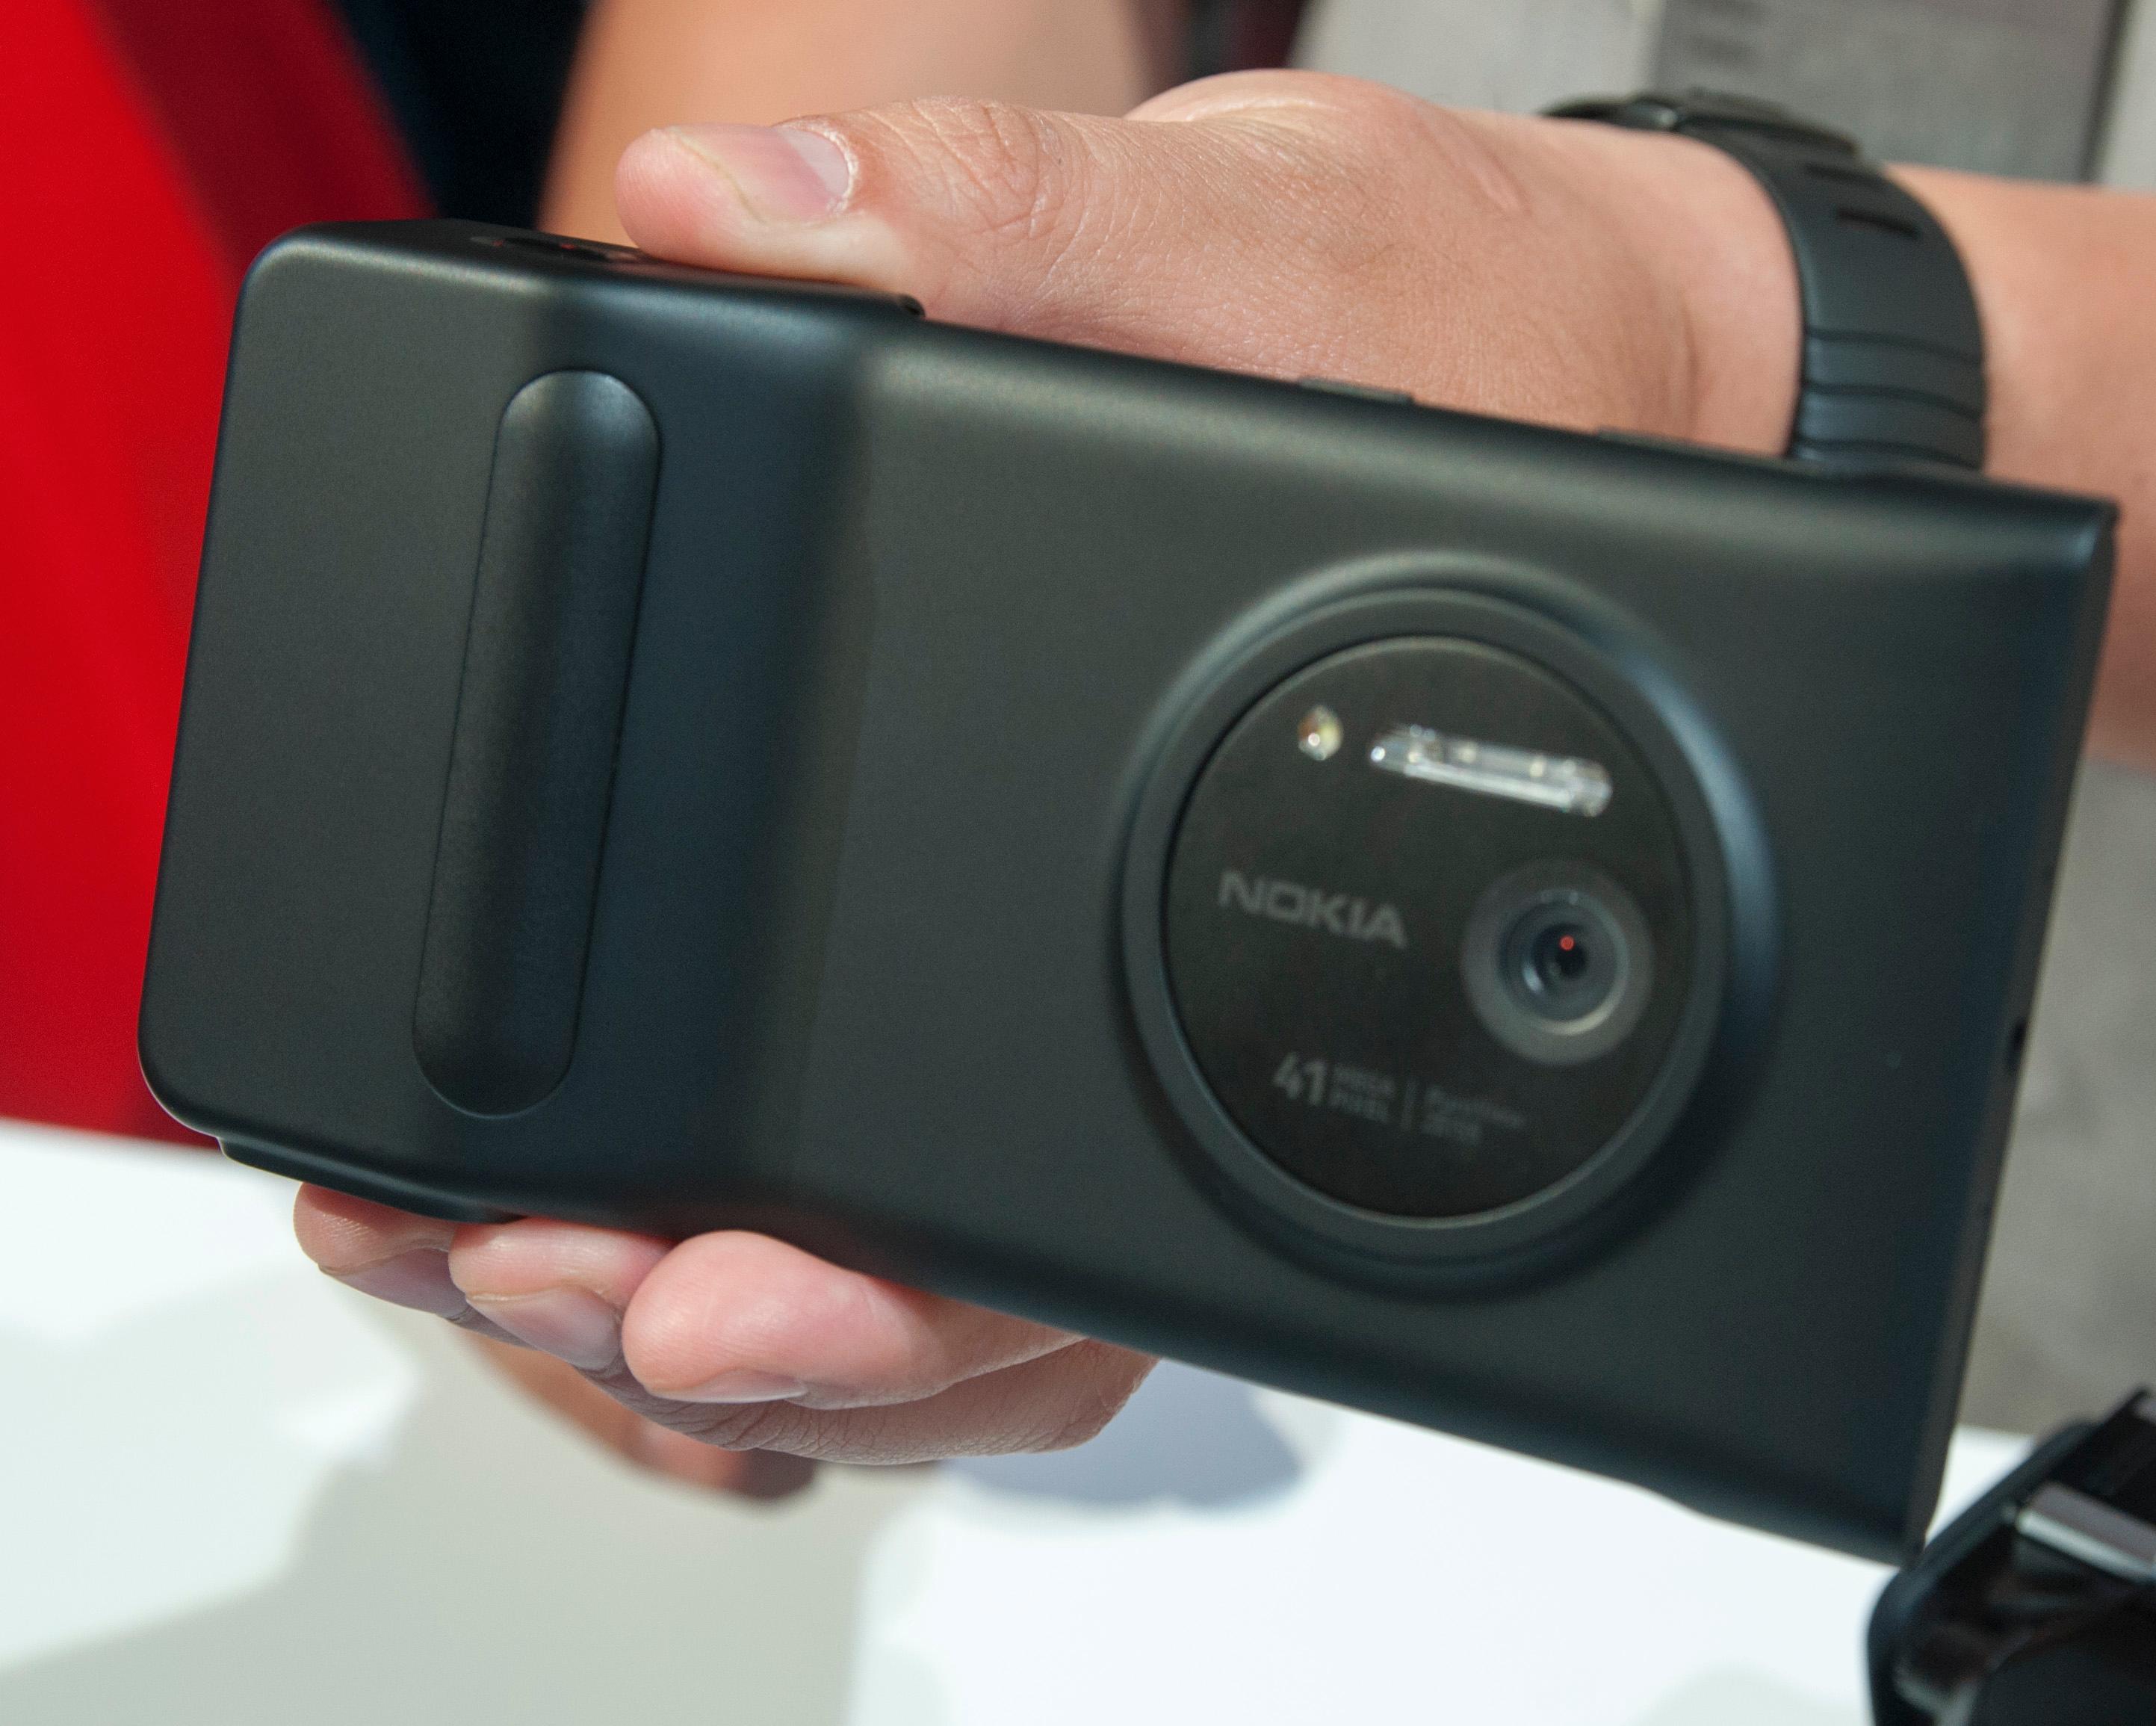 Slik ser Lumia 1020 ut med batterigrepet på.Foto: Finn Jarle Kvalheim, Amobil.no